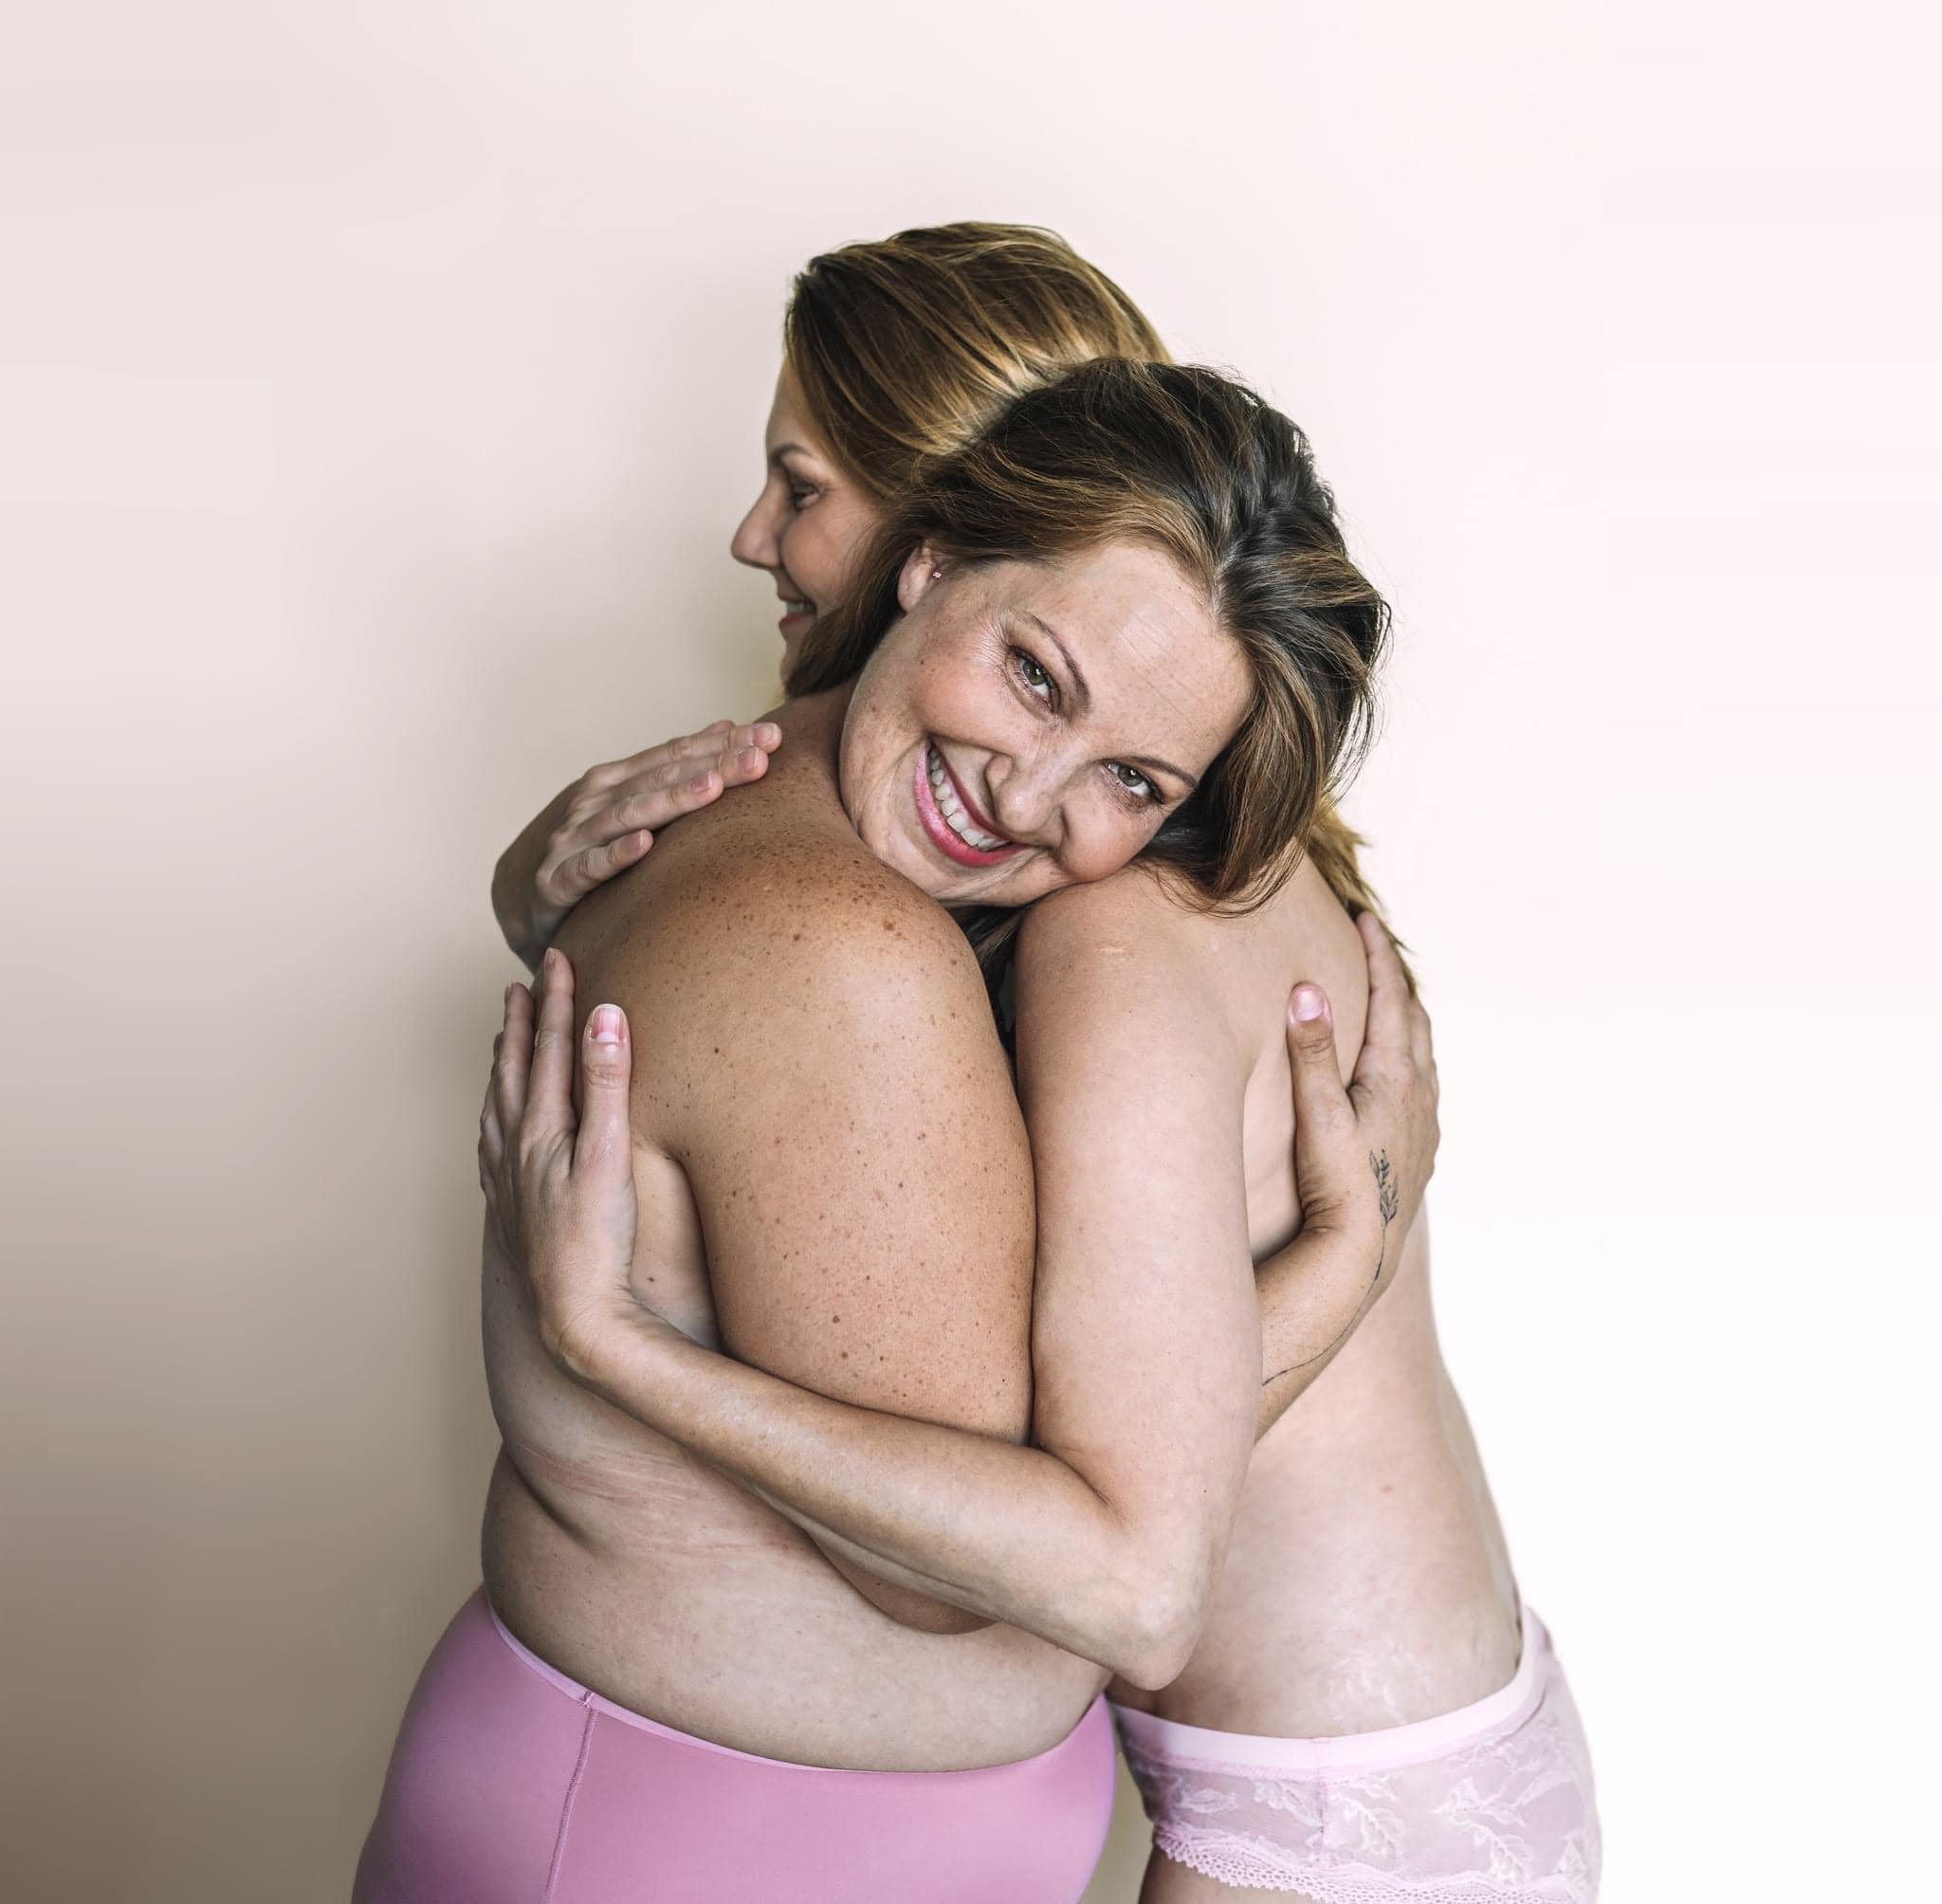 Reálné a ohromující fotografie 5 žen s rakovinou prsu v říjnovém čísle Heroine